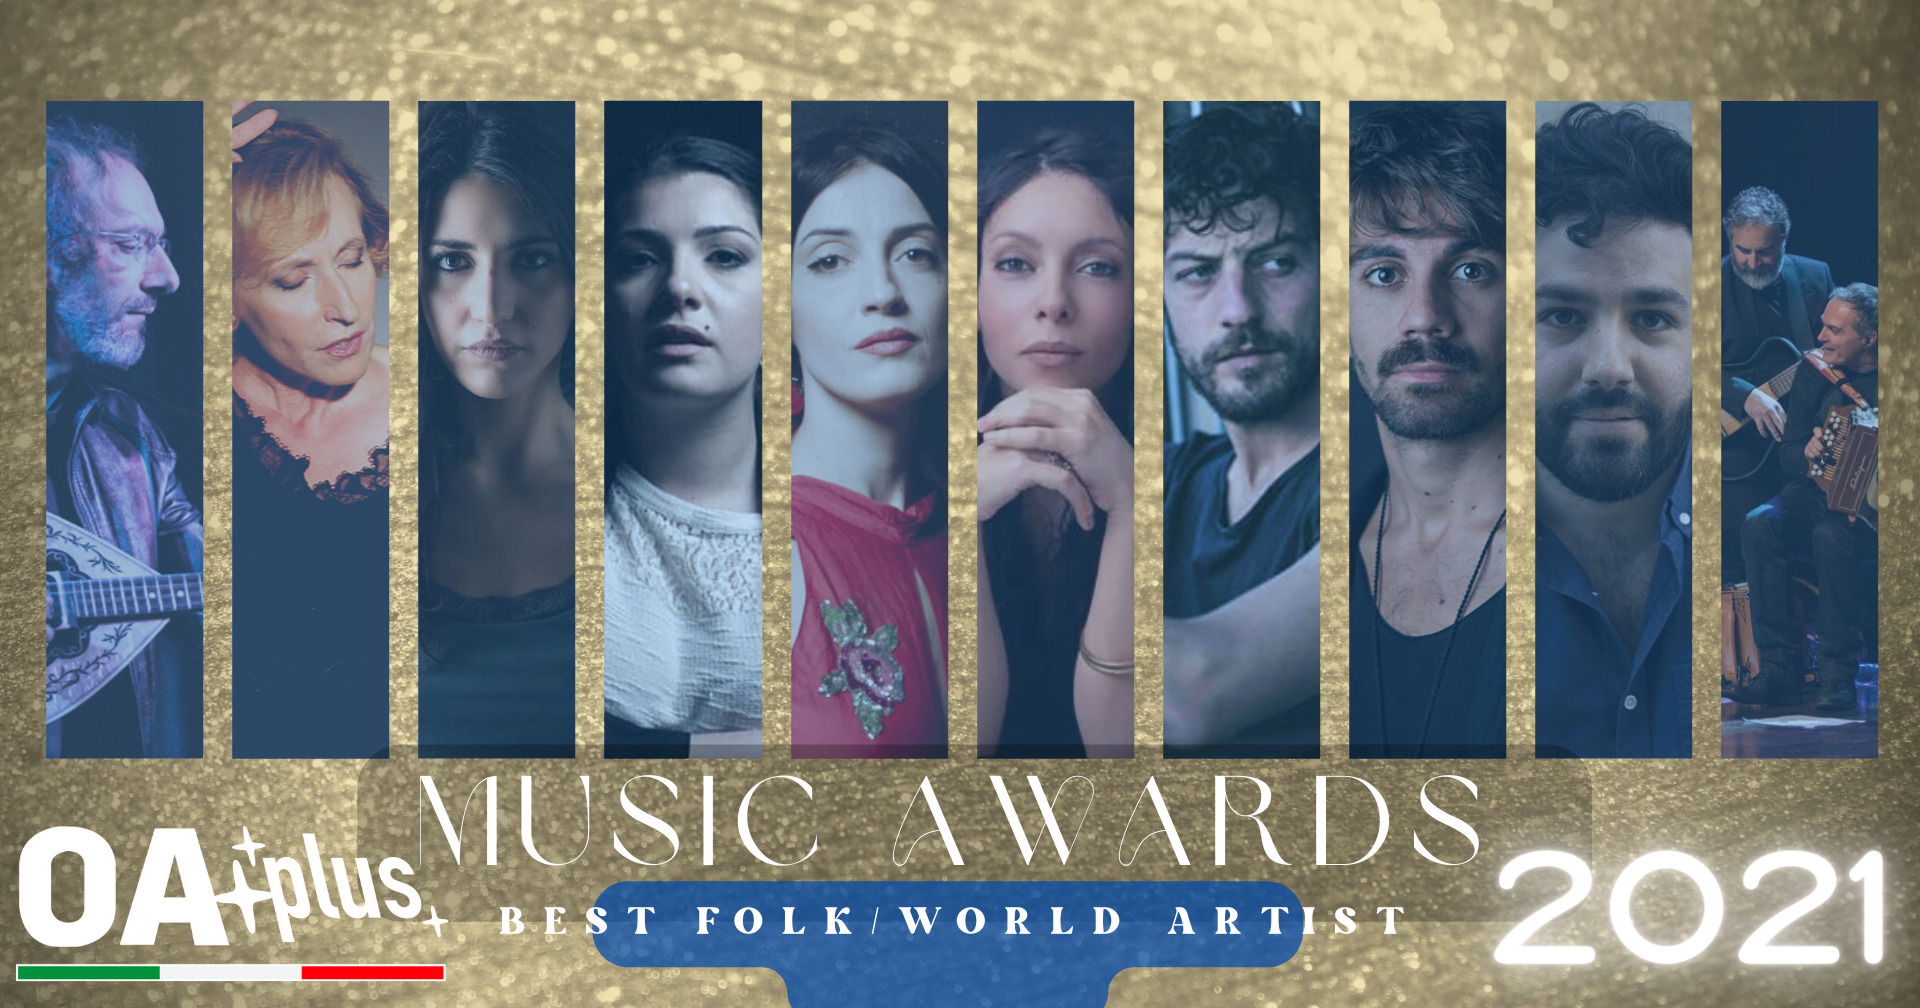 OA PLUS MUSIC AWARDS 2021. Chi sono i "Migliori artisti folk e world" dell’anno? Vince Stefano Saletti – ECCO LA TOP 10